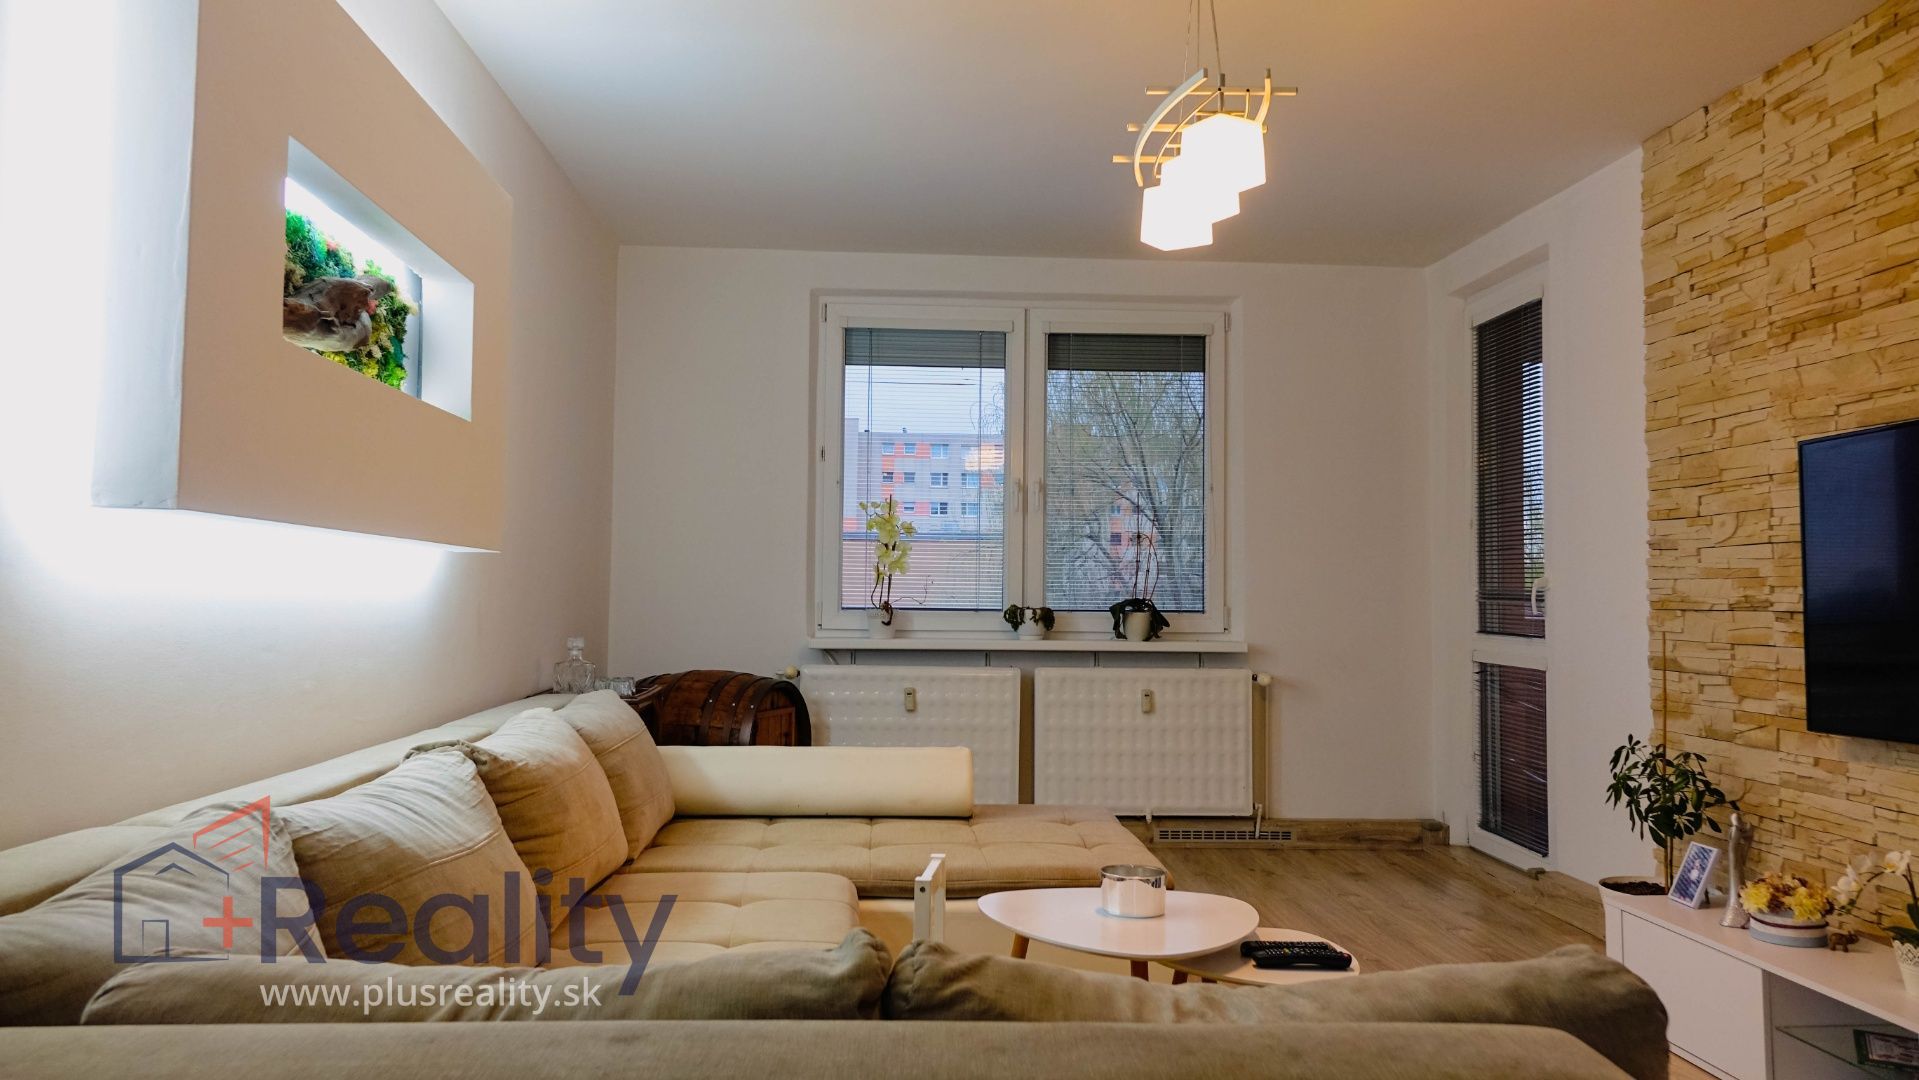 Galéria: PLUS REALITY I Zrekonštruovaný 4 izbový byt s balkónom v Dunajskej Strede na predaj! 